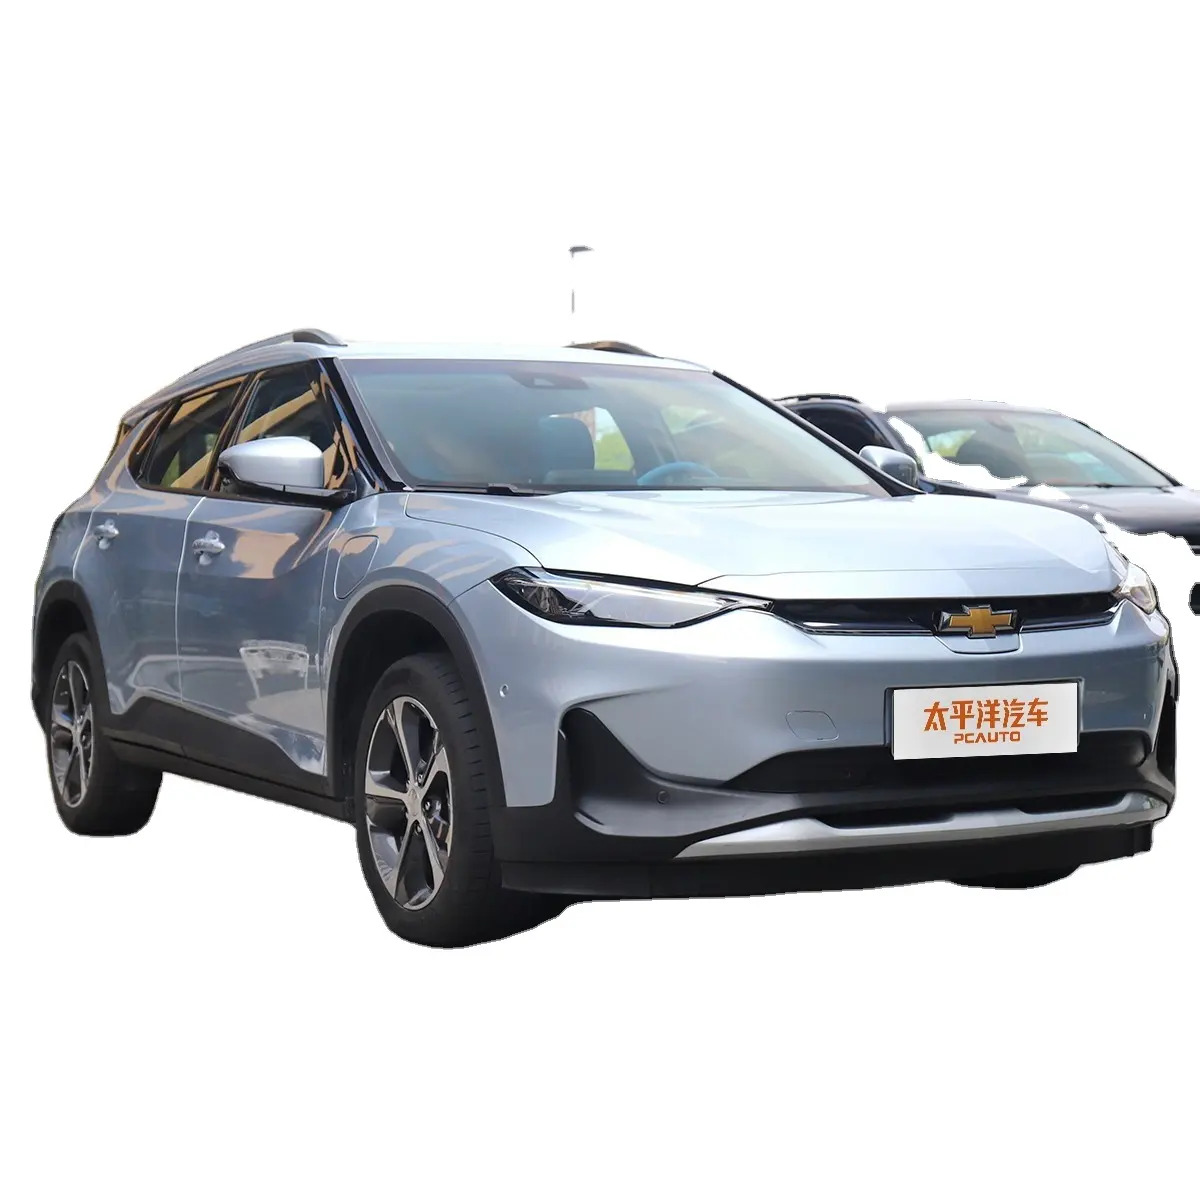 המחיר הטוב ביותר 2022 רכב אנרגיה חדש מהירות גבוהה chevrolet menlo ev מכונית חשמלית גדולה חכמה